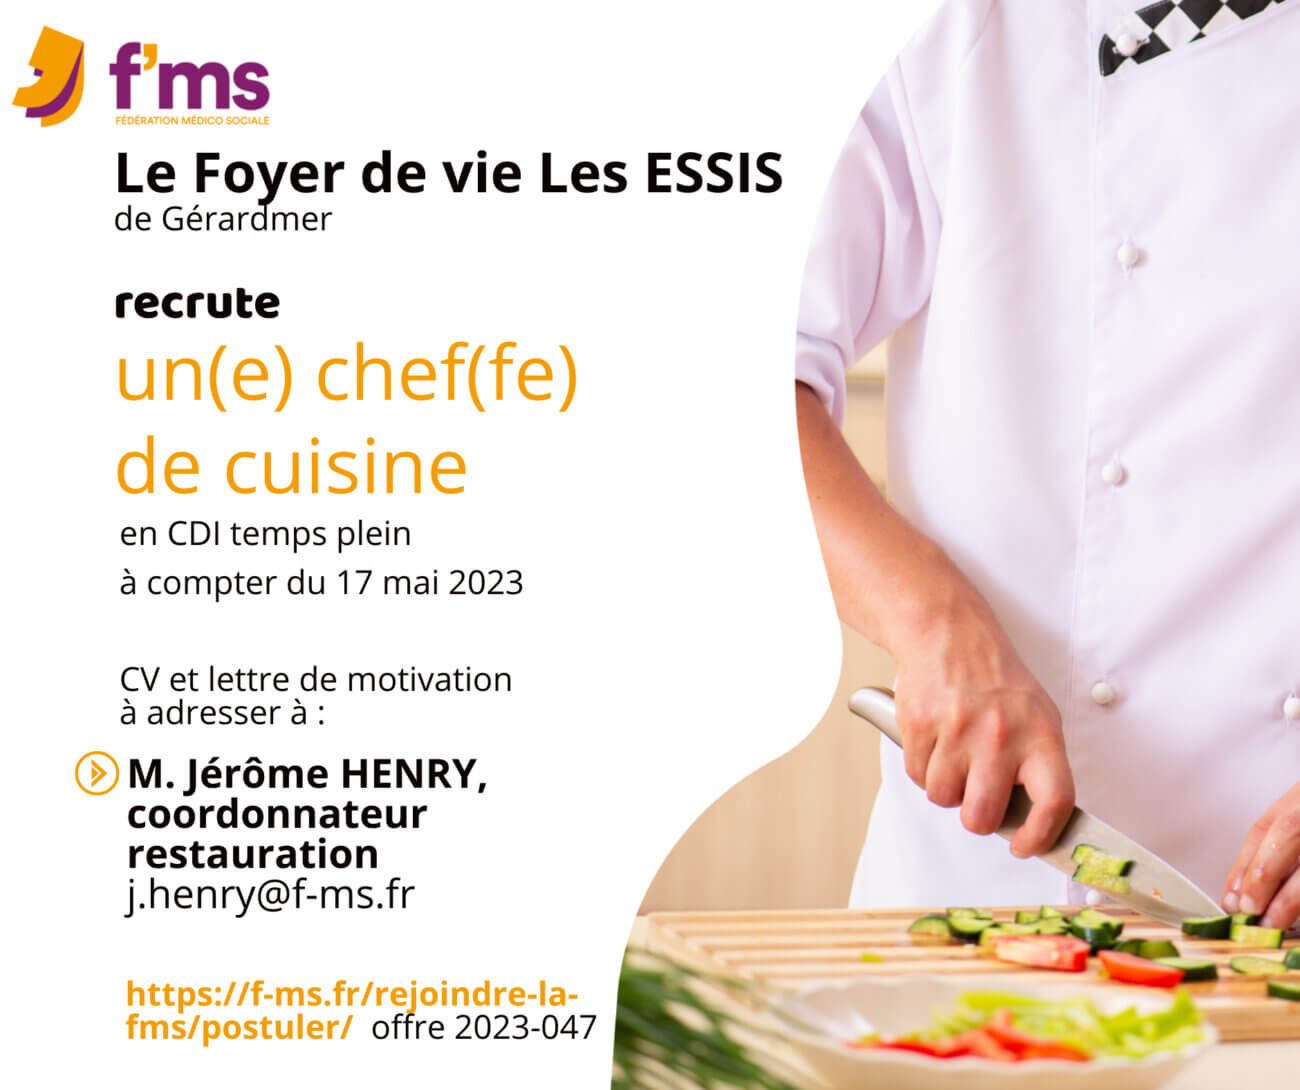 federation medico sociale fms postuler Le Foyer de vie LES ESSIS recrute un e chef fe de cuisine 215 FMS | Fédération Médico Sociale